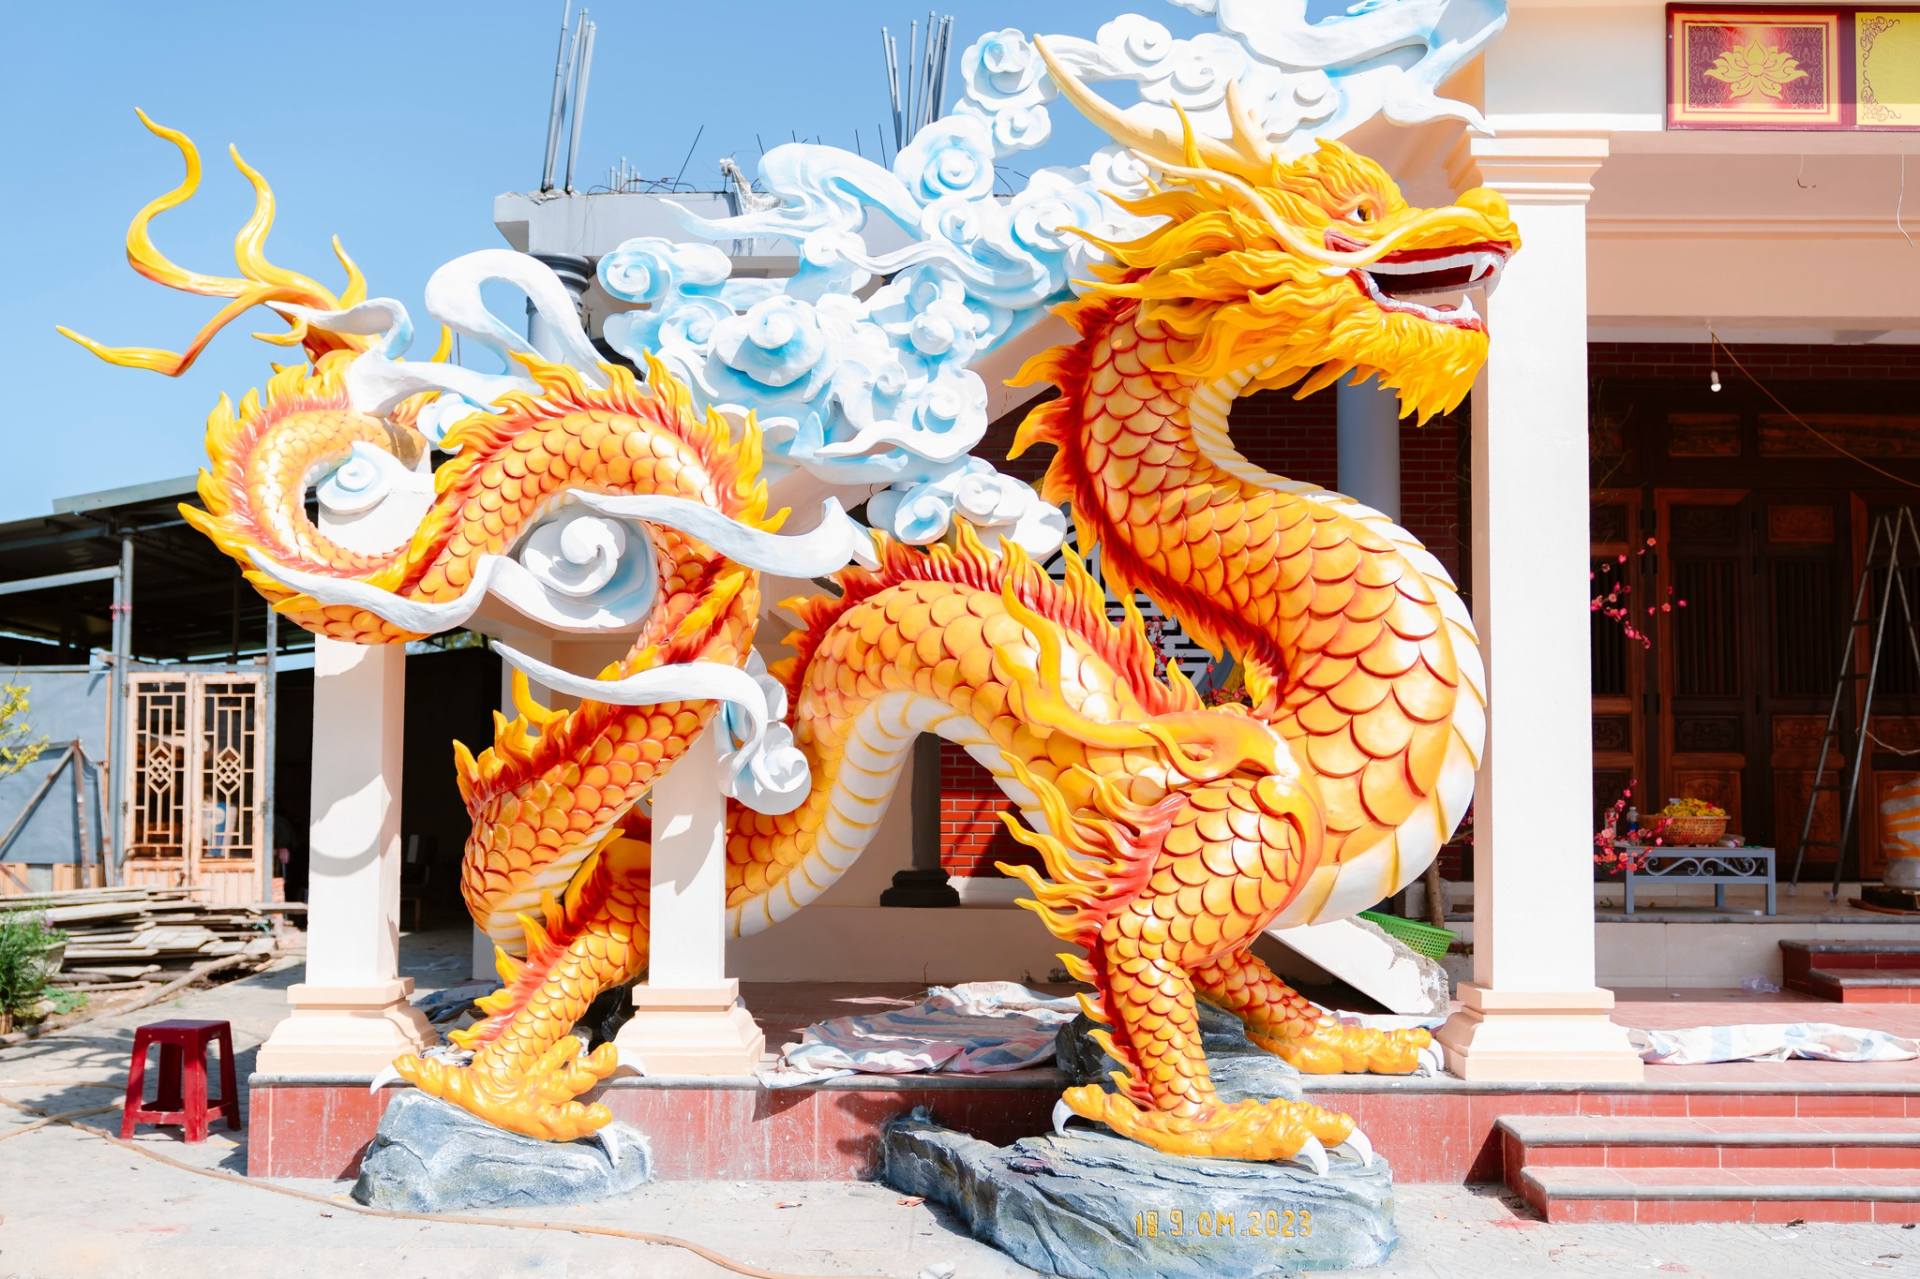 Linh vật Rồng 2024 tại Quảng Trị hoàn thành nhận 'mưa lời khen', danh tính nghệ nhân thực hiện không gây bất ngờ - ảnh 3